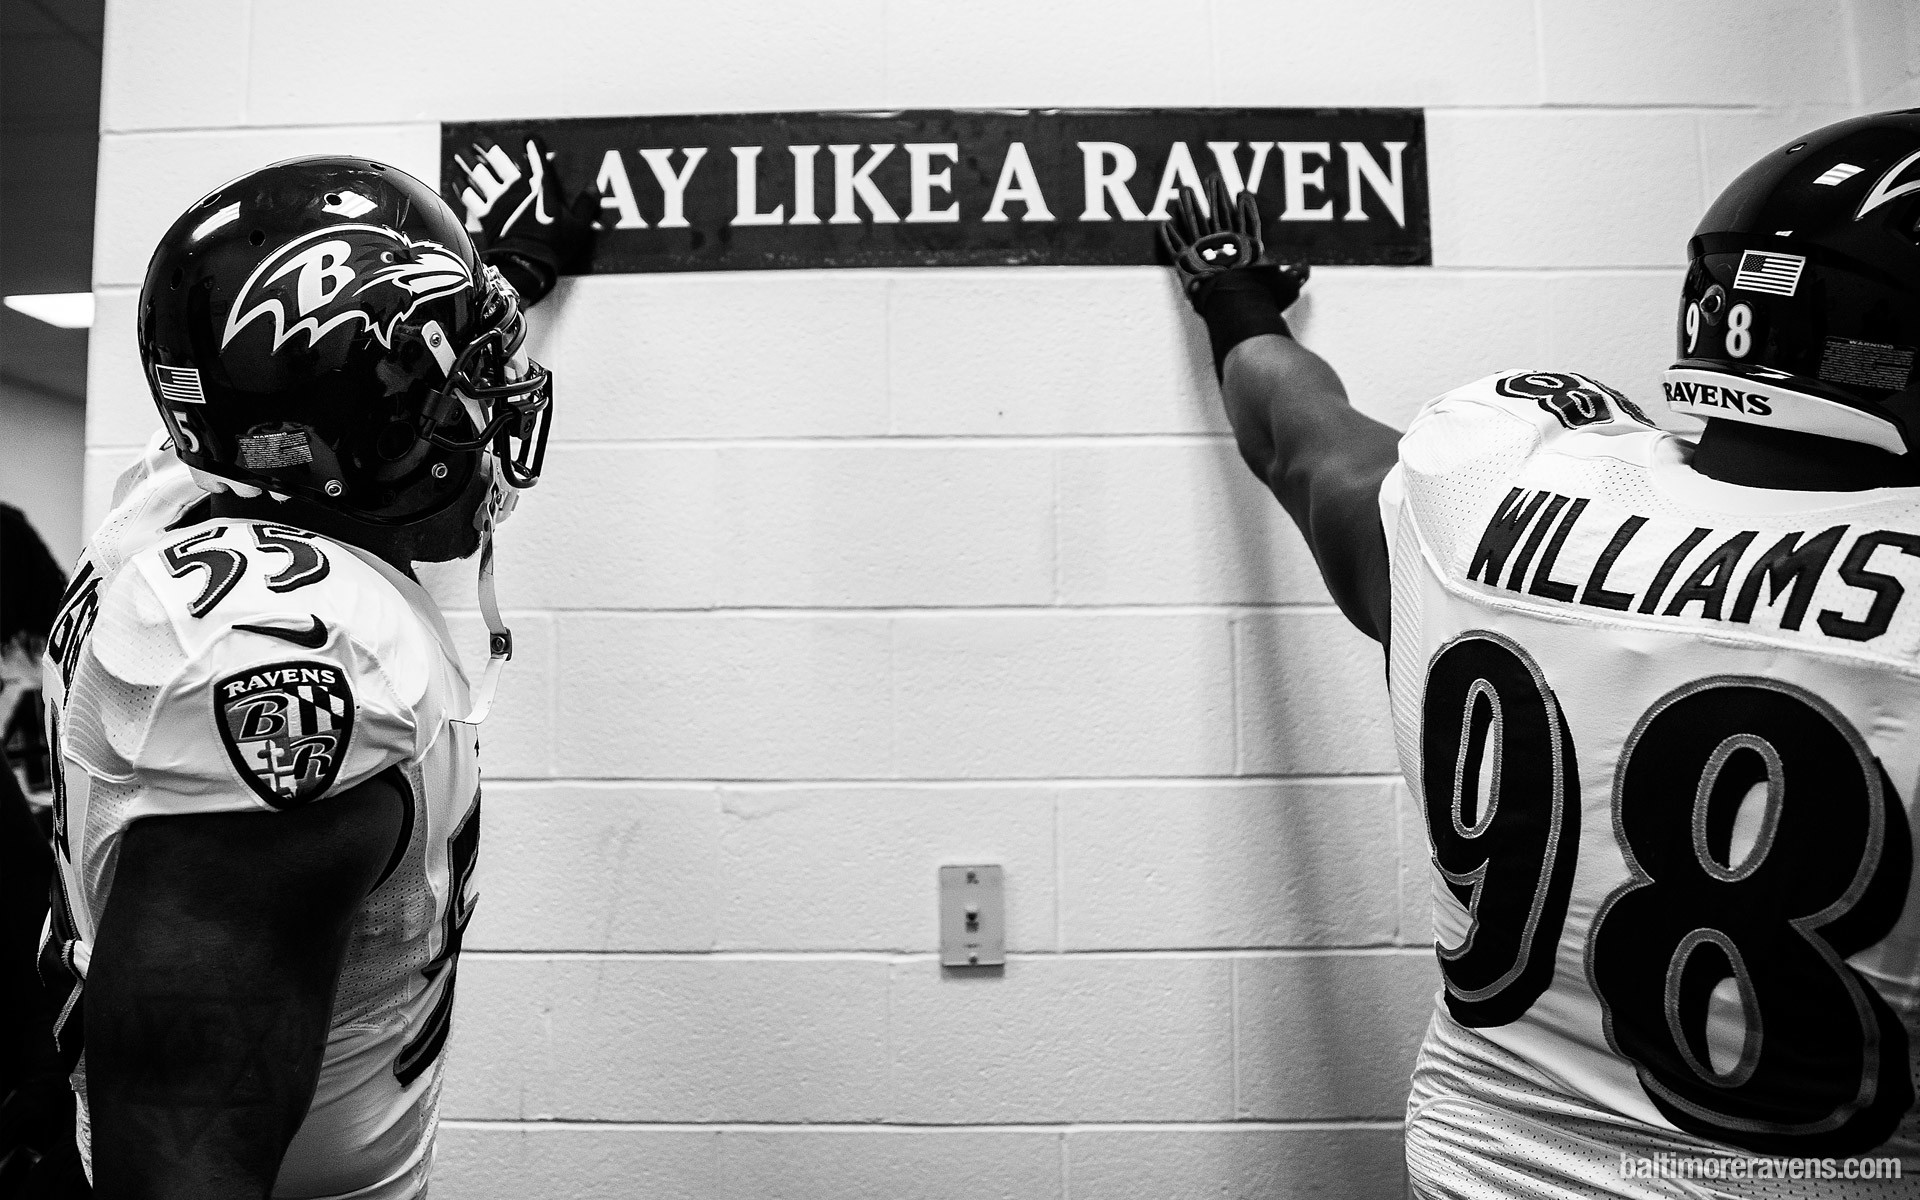 Ravens Wallpapers  Baltimore Ravens –